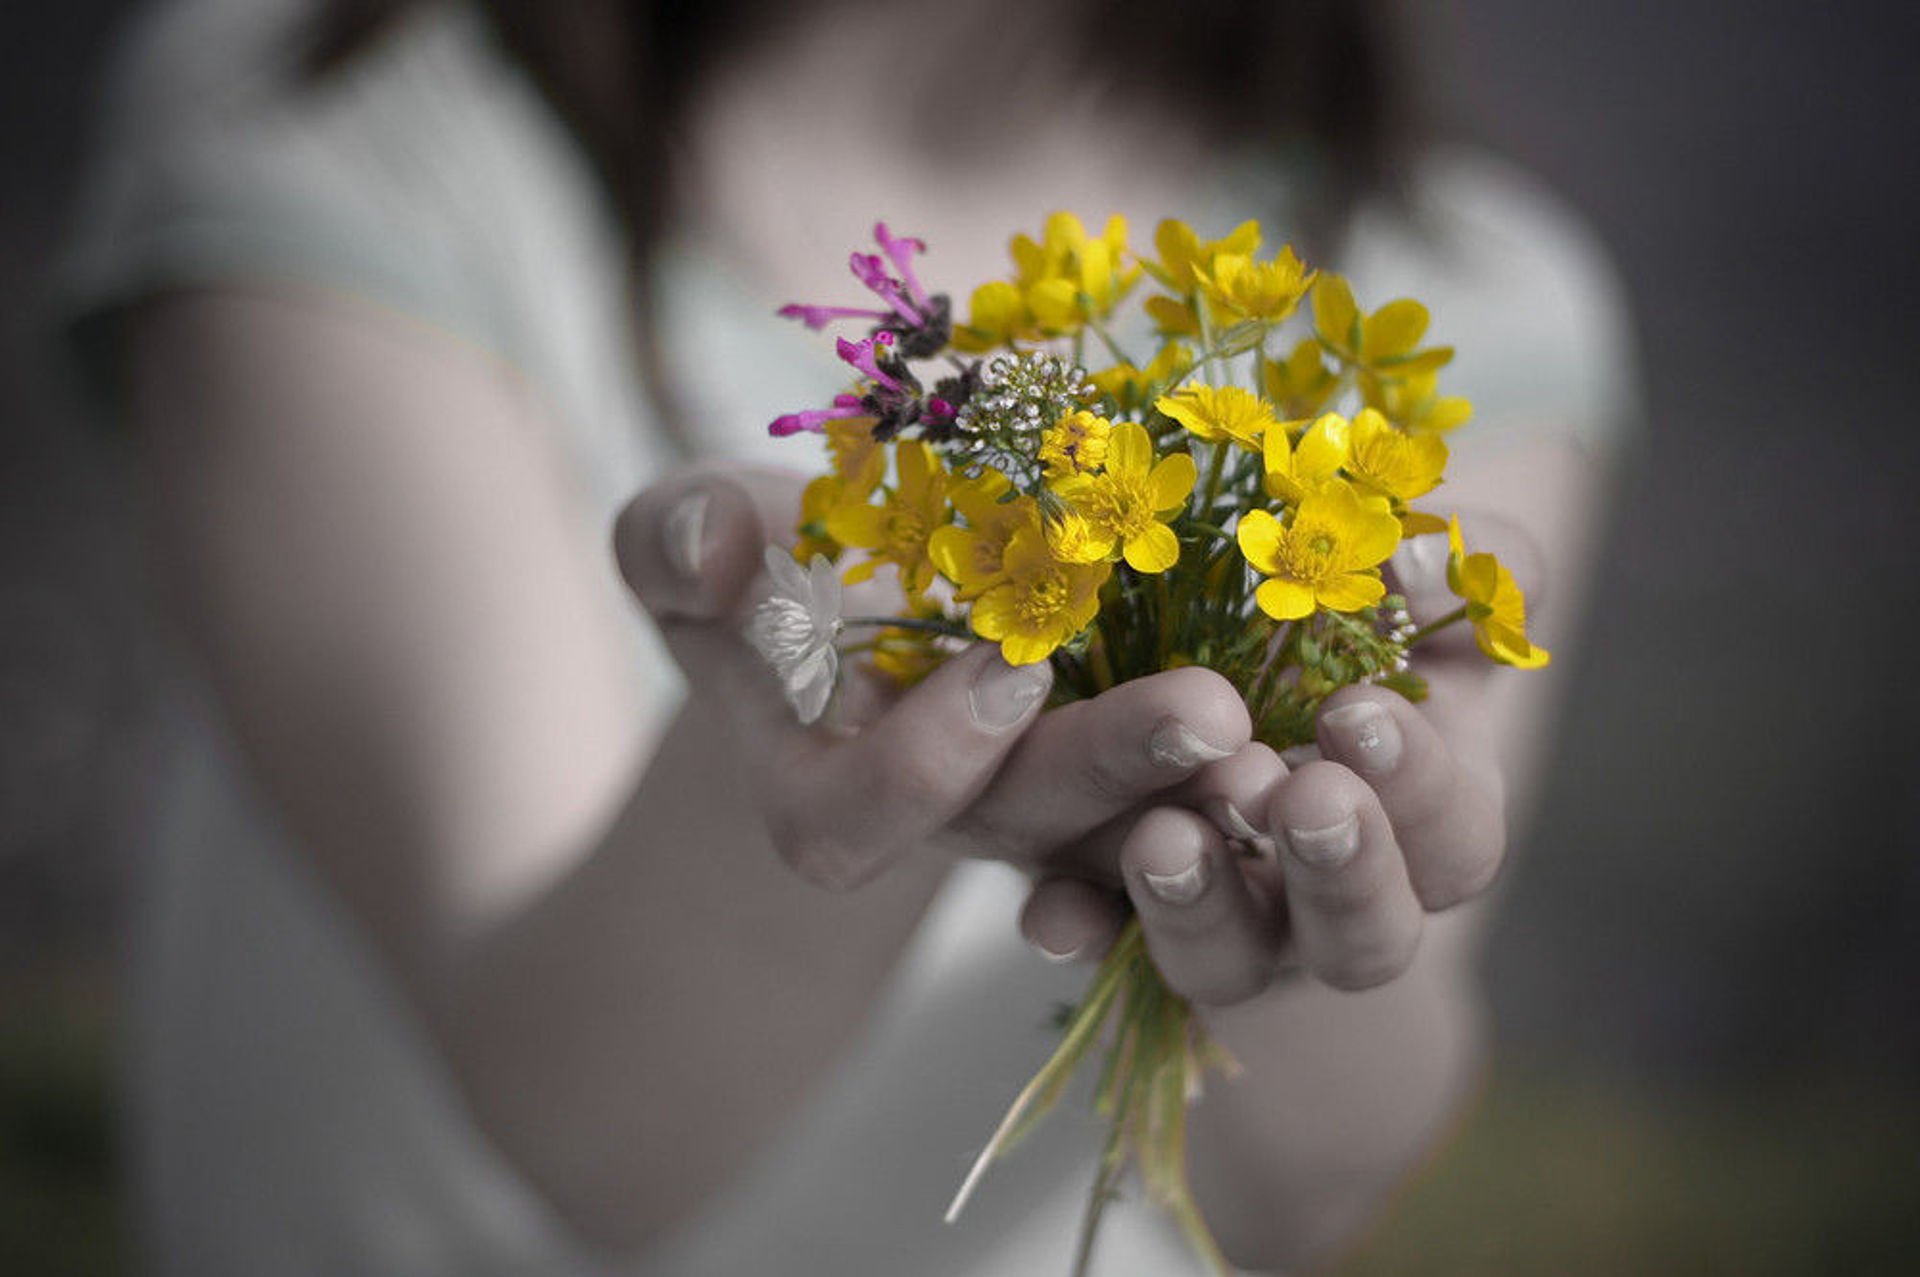 Дарите всегда внимания. Цветы в ладонях. Цветы радости. Цветы радости жизни. Счастье в руках.